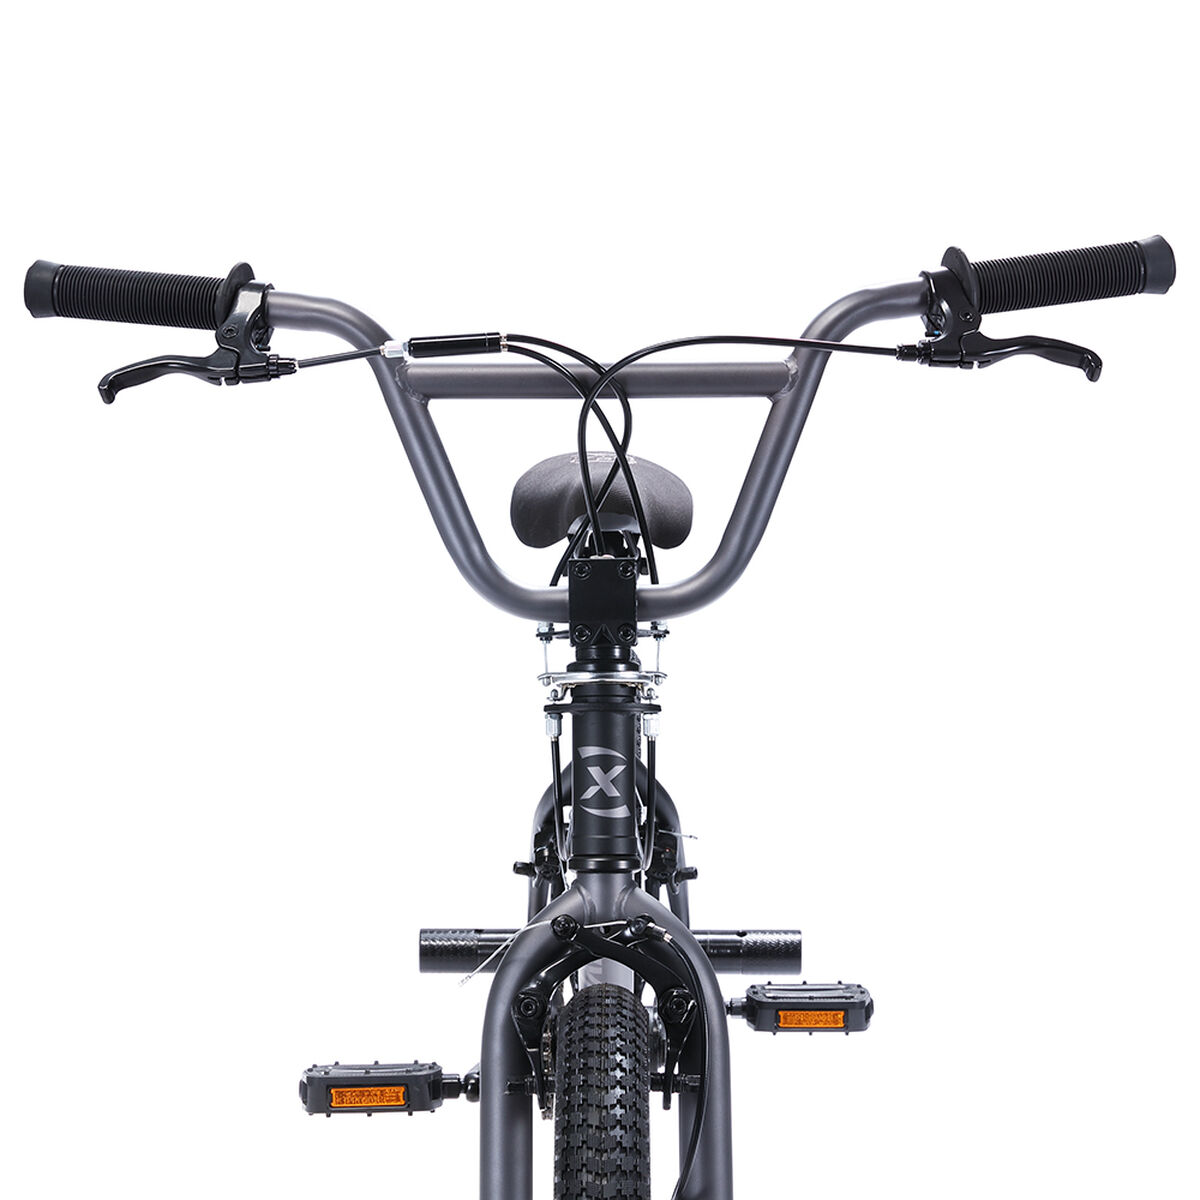 Bicicleta Infantil Oxford Spine - Freestyle Aro 20